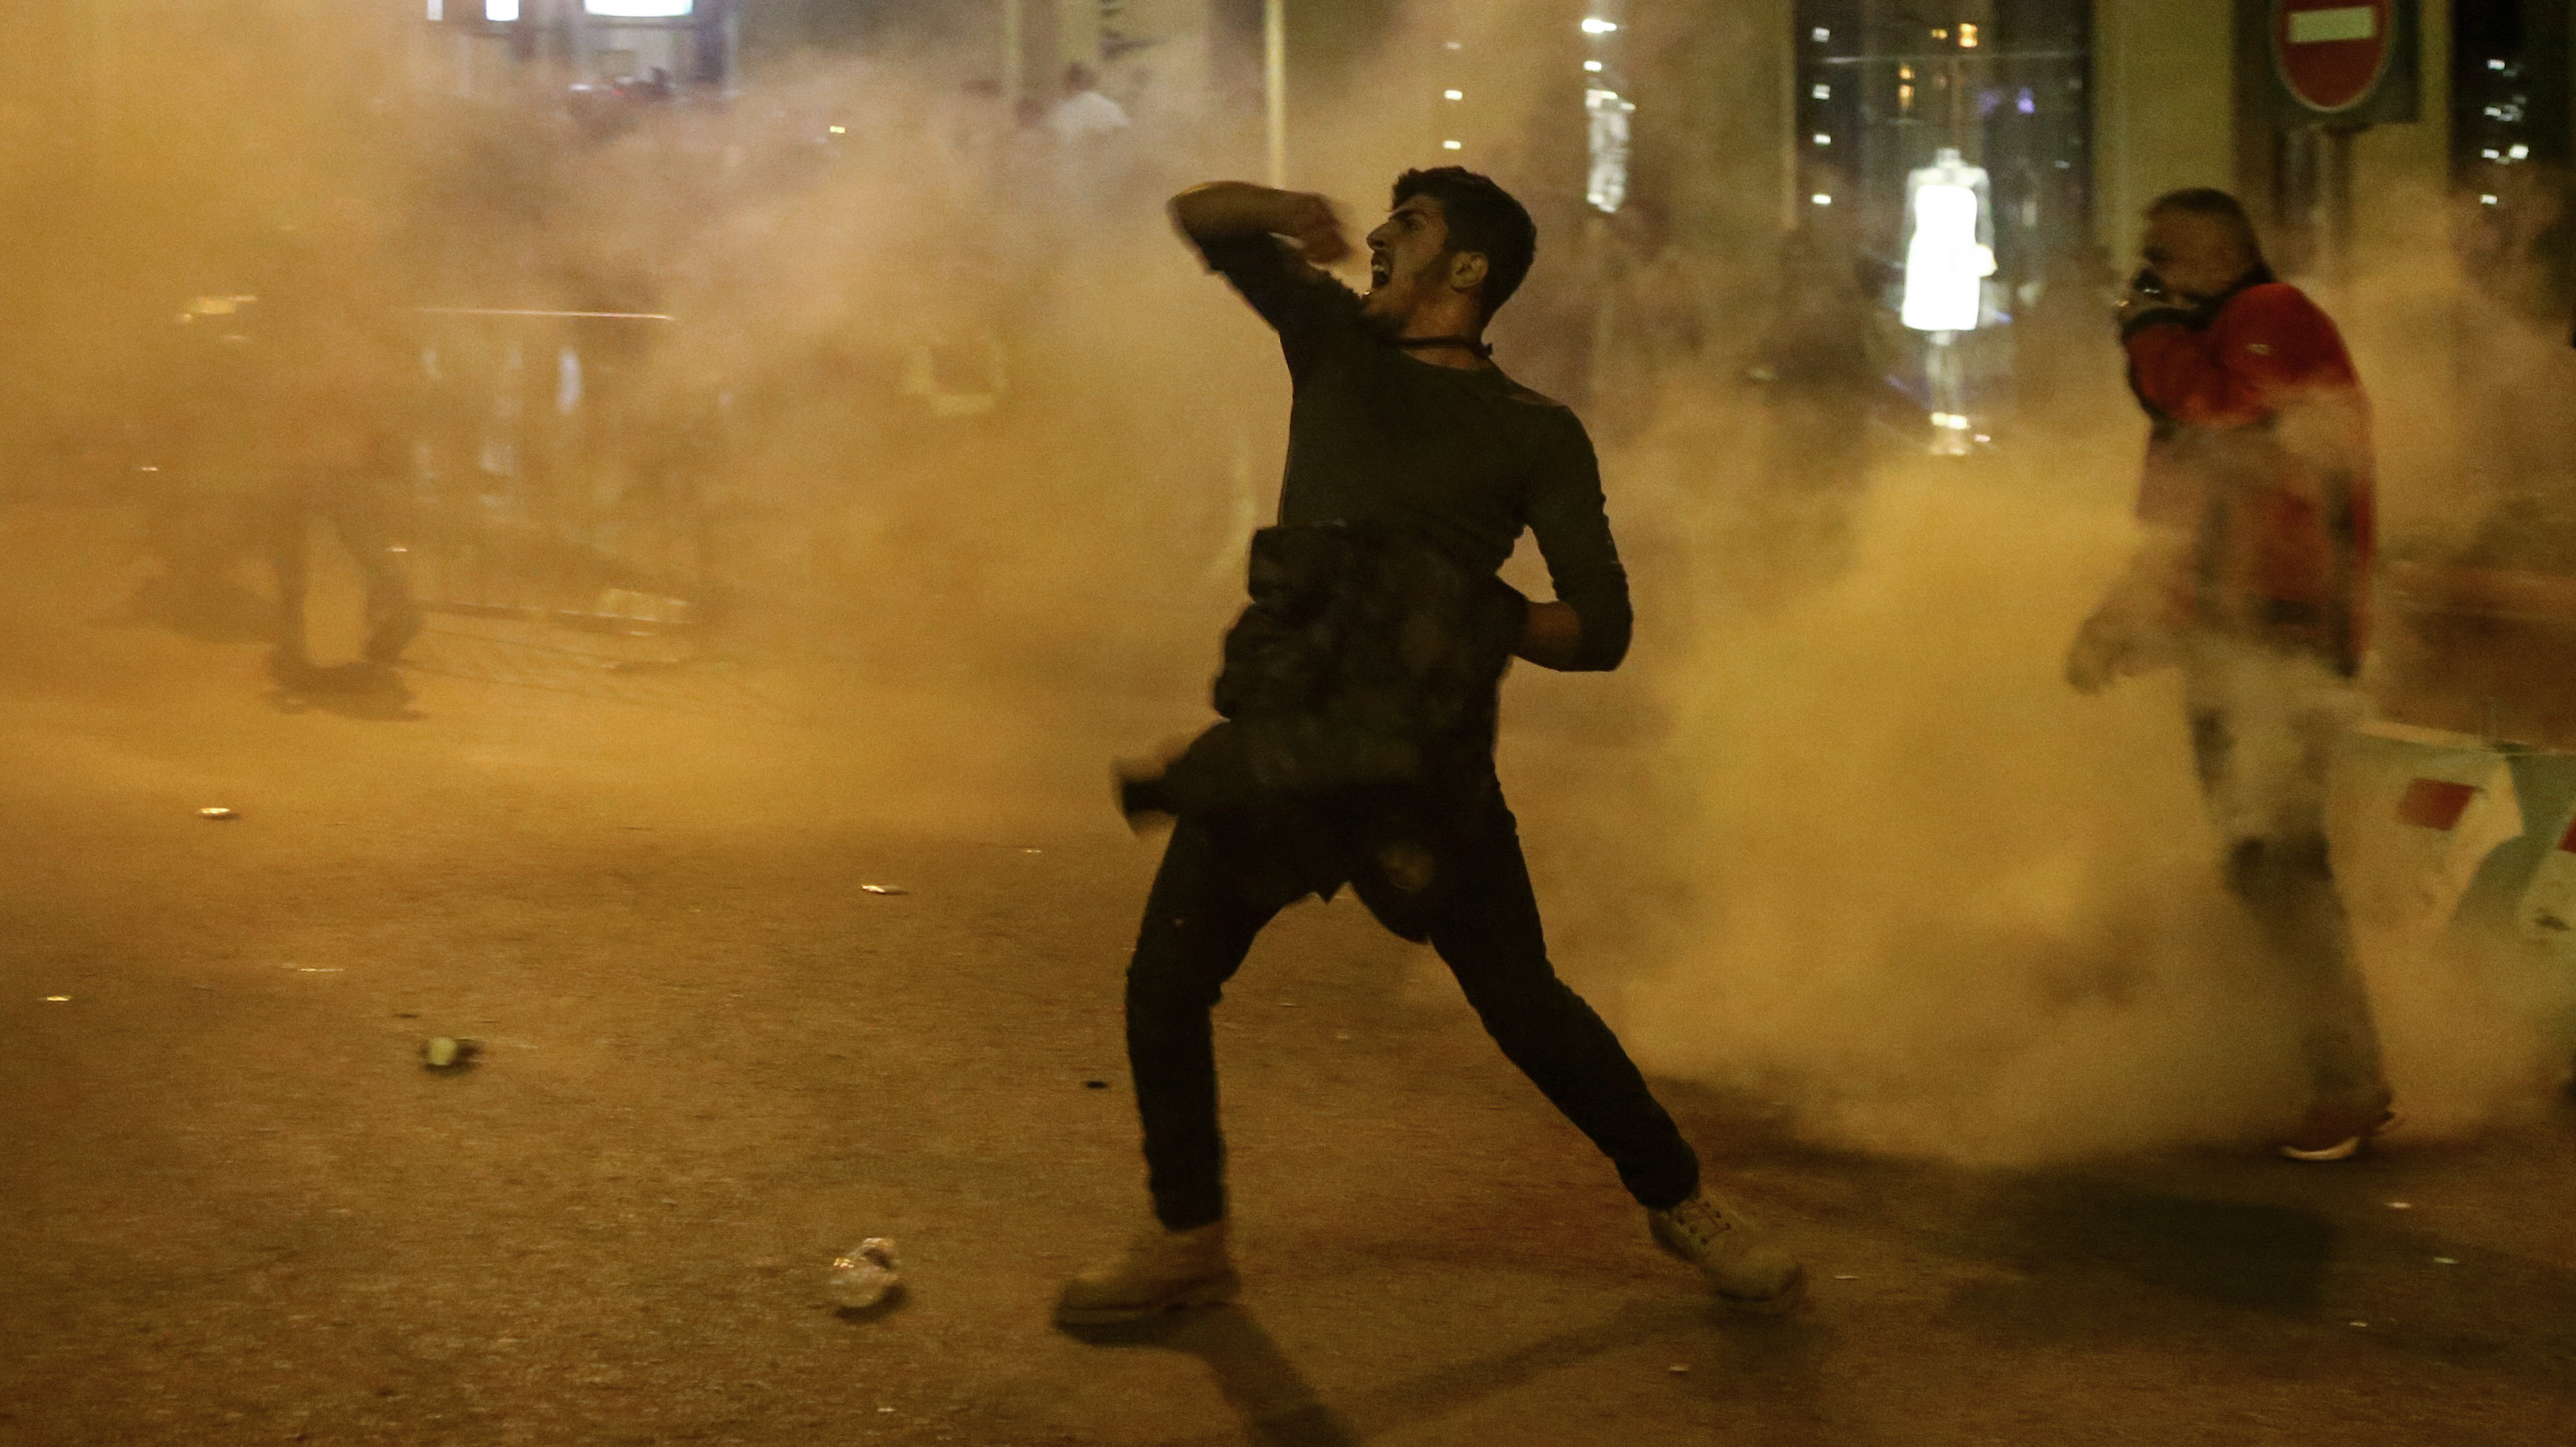 Lebanon Protests Escalate, Erupt in Major Violence